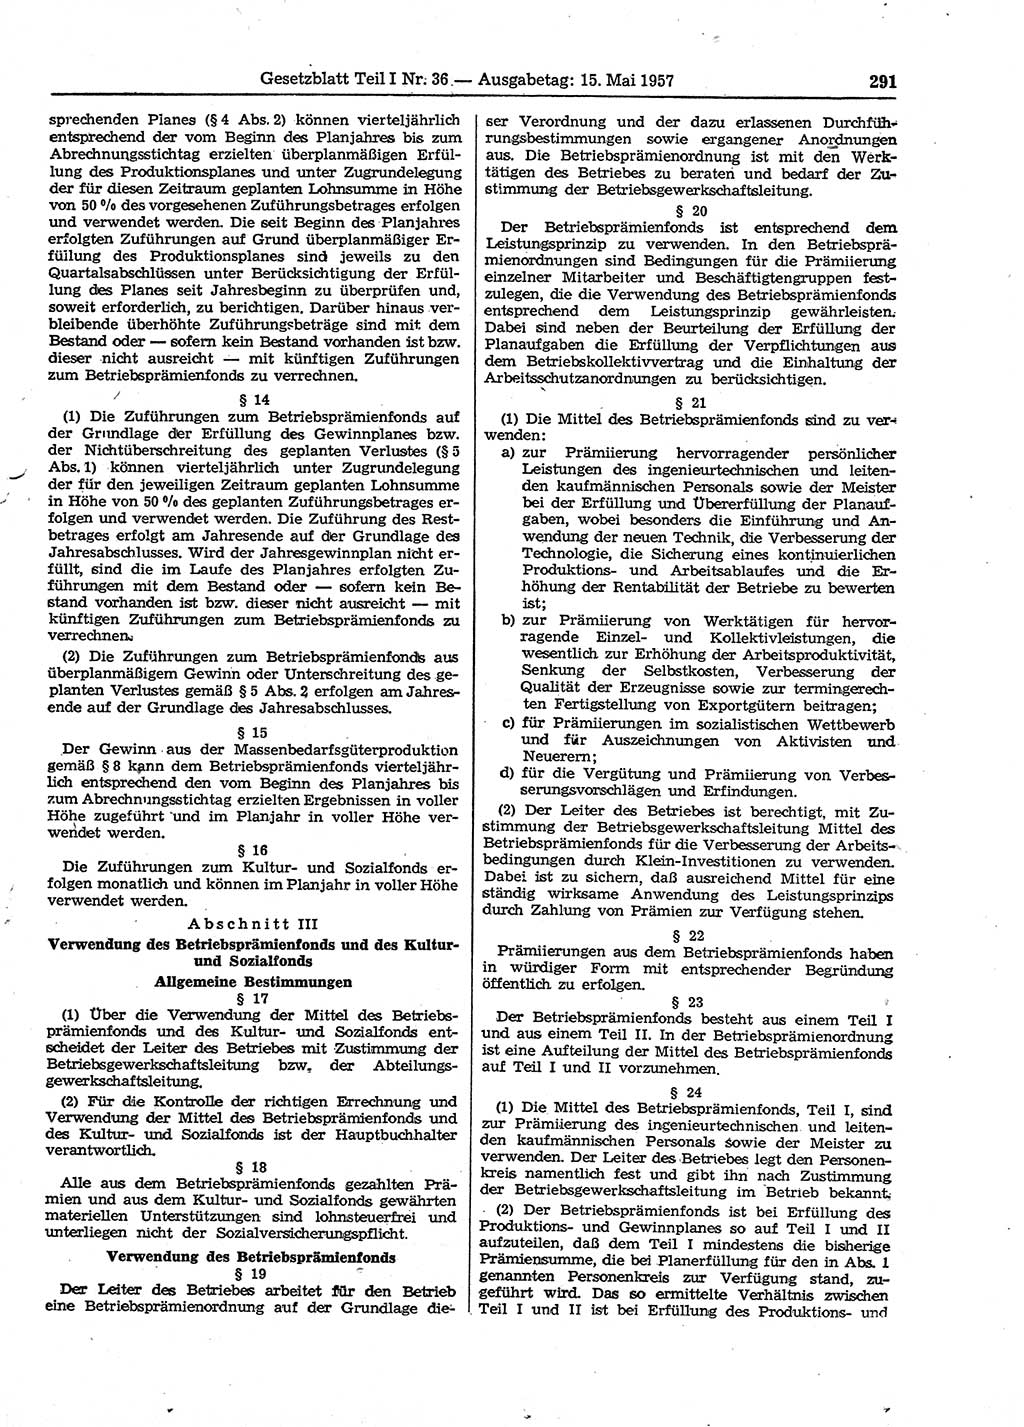 Gesetzblatt (GBl.) der Deutschen Demokratischen Republik (DDR) Teil Ⅰ 1957, Seite 291 (GBl. DDR Ⅰ 1957, S. 291)